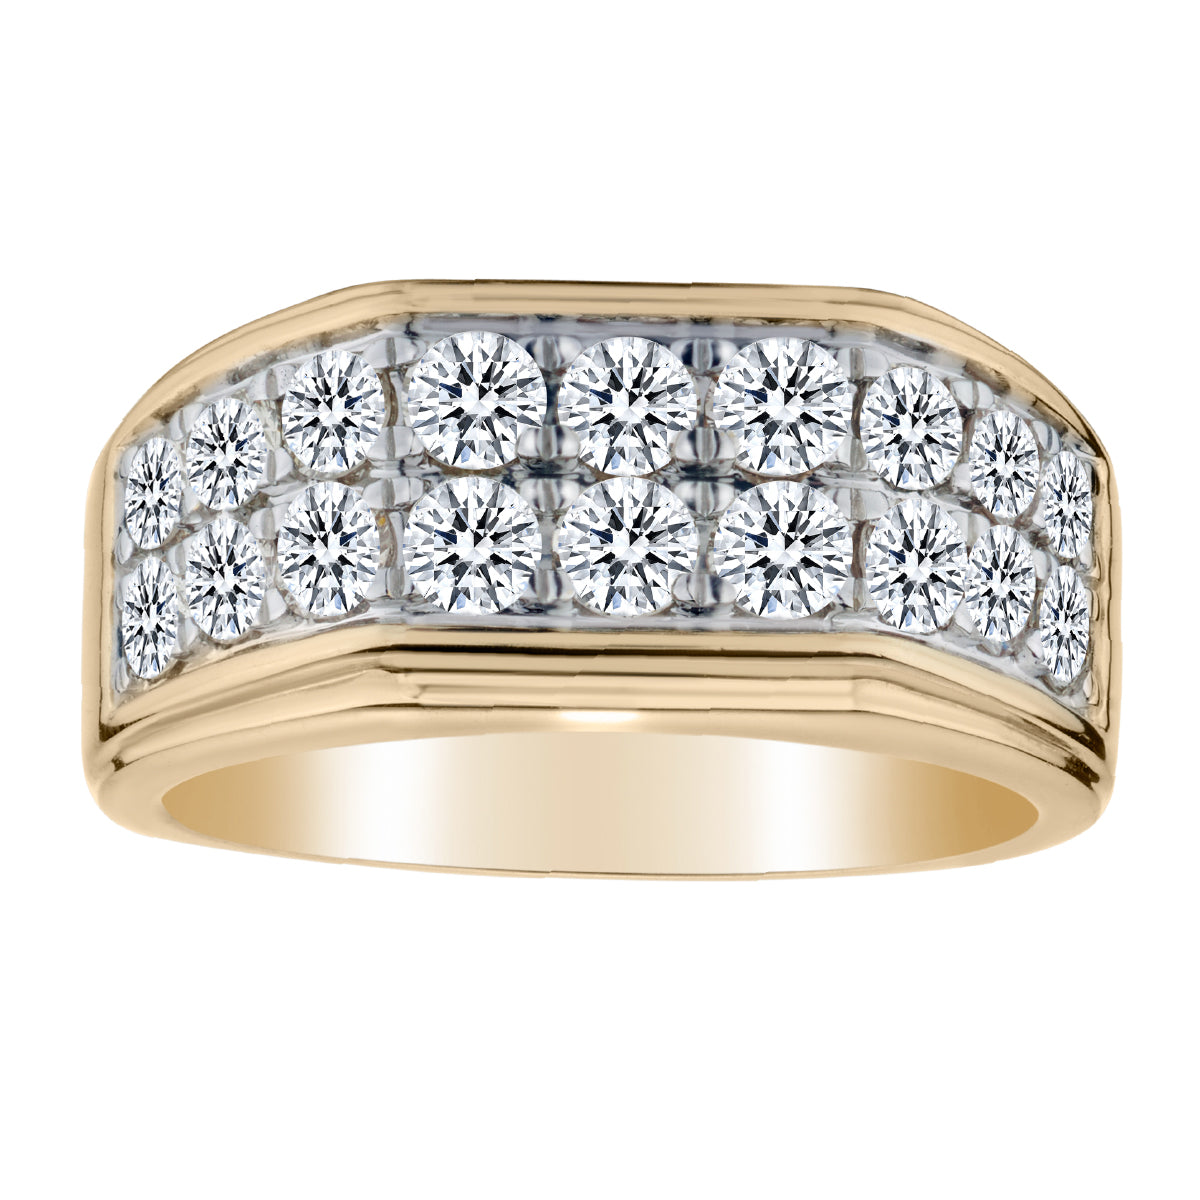 2.00 Carat of Diamonds Heavy Gentleman's Ring, 10kt Yellow Gold.....................NOW